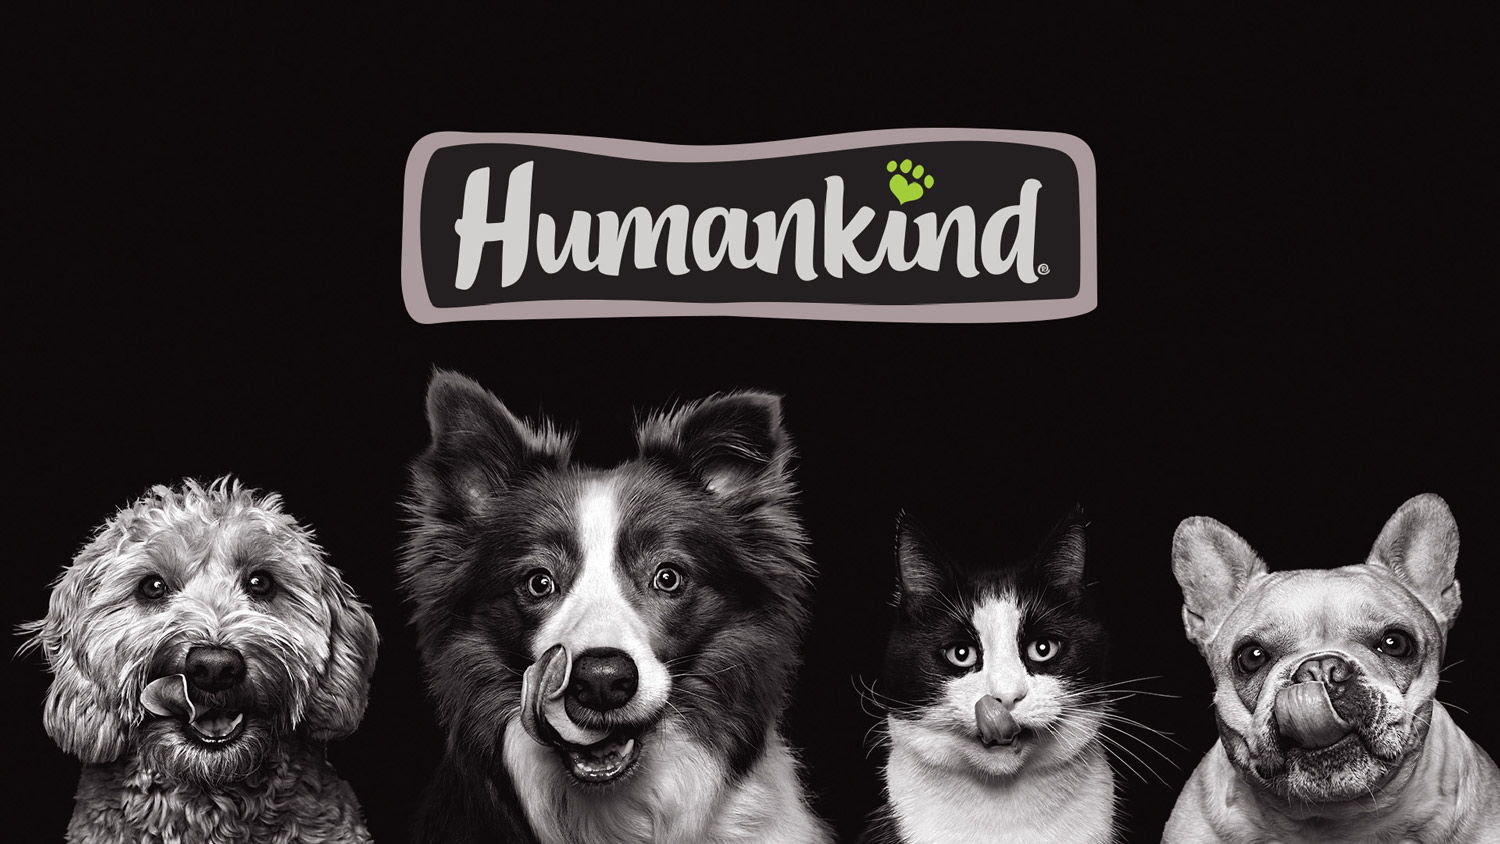 HUMANKUND狗粮系列产品包装设计创意